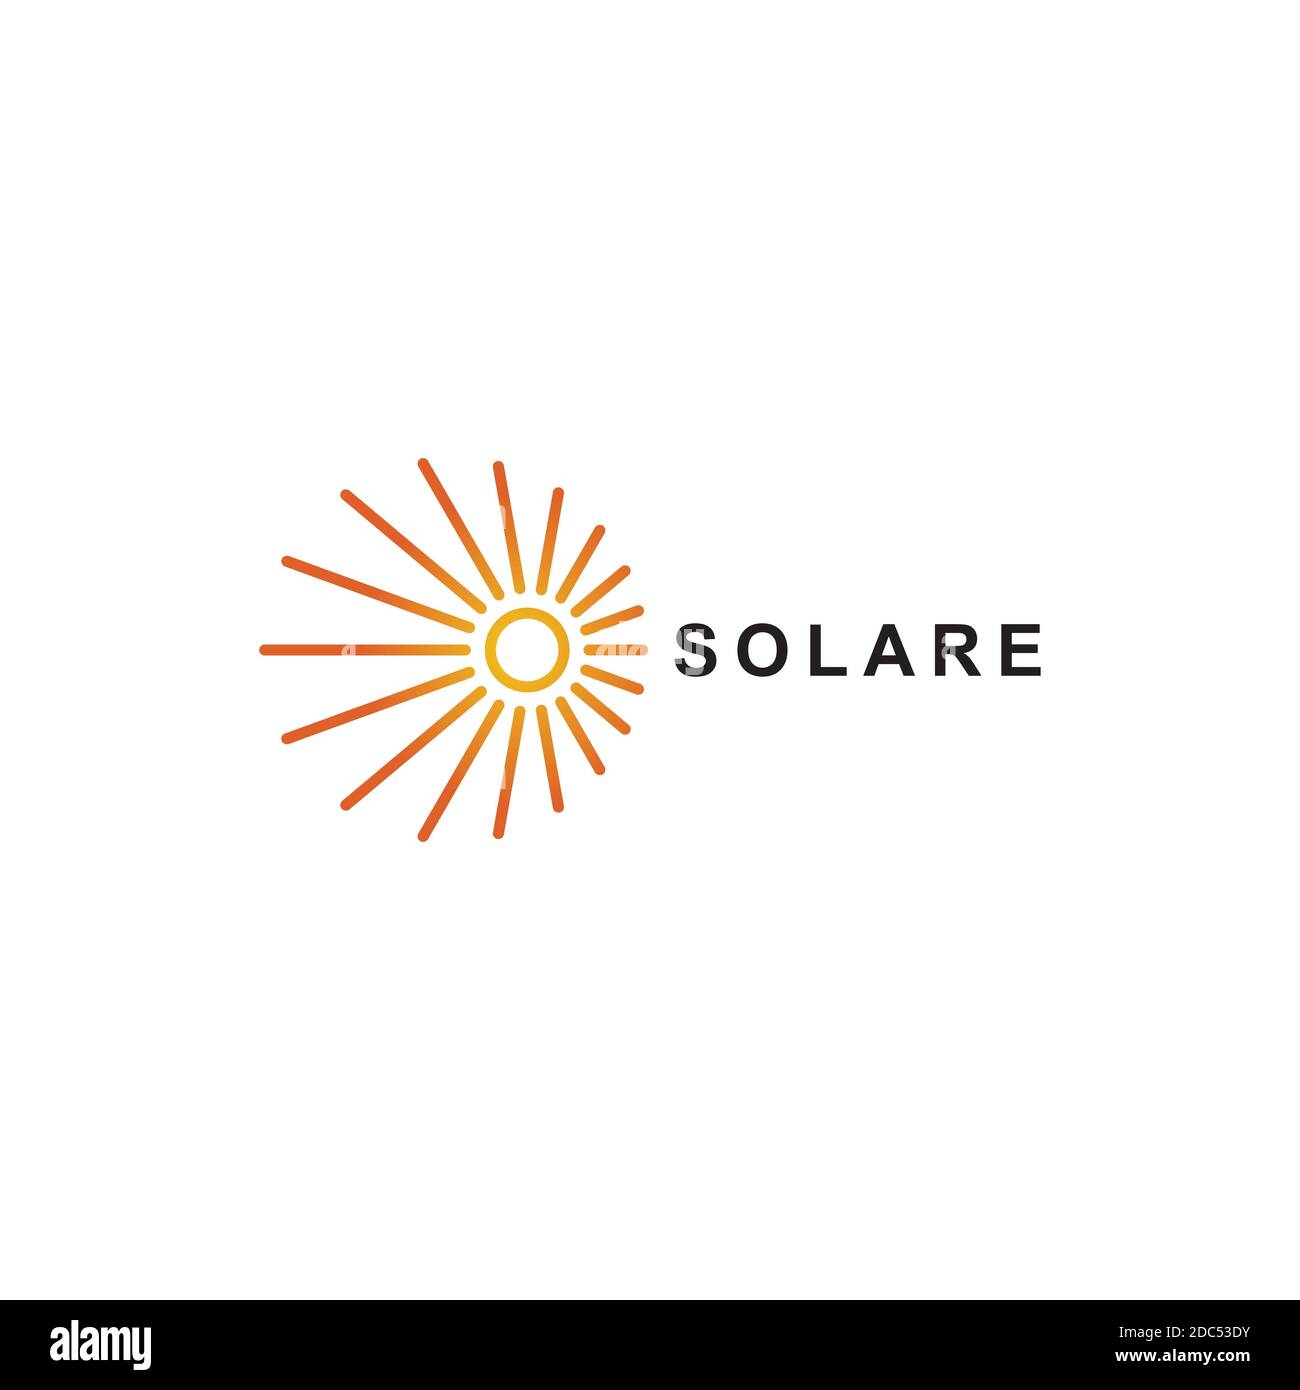 Solar logo design vector template.Creative sun symbol Stock Vector